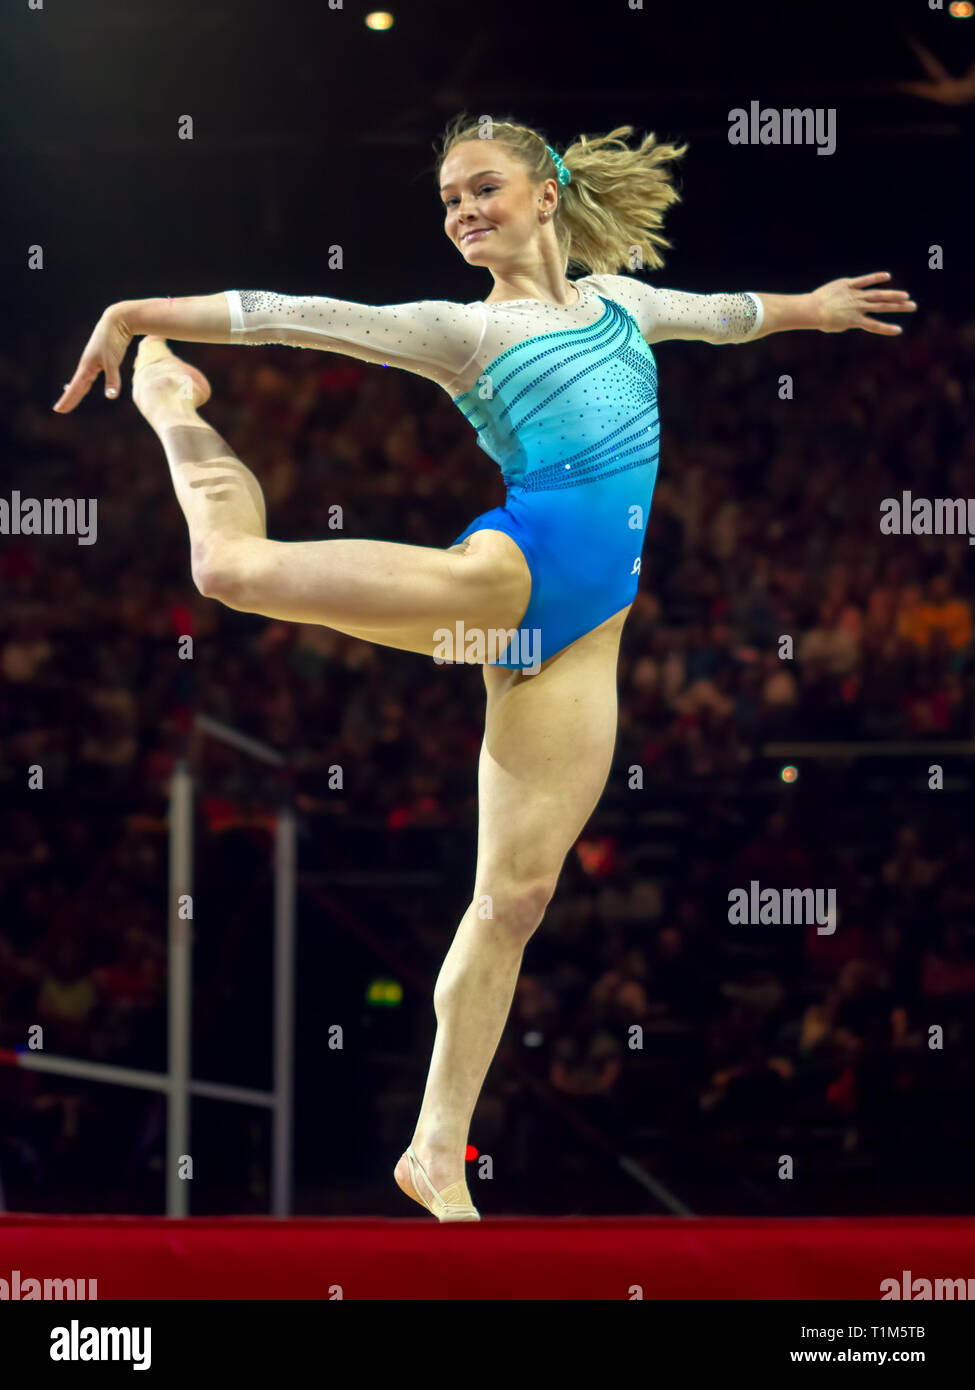 Birmingham, Angleterre, RU. 23 mars, 2019. La United States' Riley McCusker en action au cours de l'étage des femmes, au cours de la compétition de gymnastique 2019 Banque D'Images